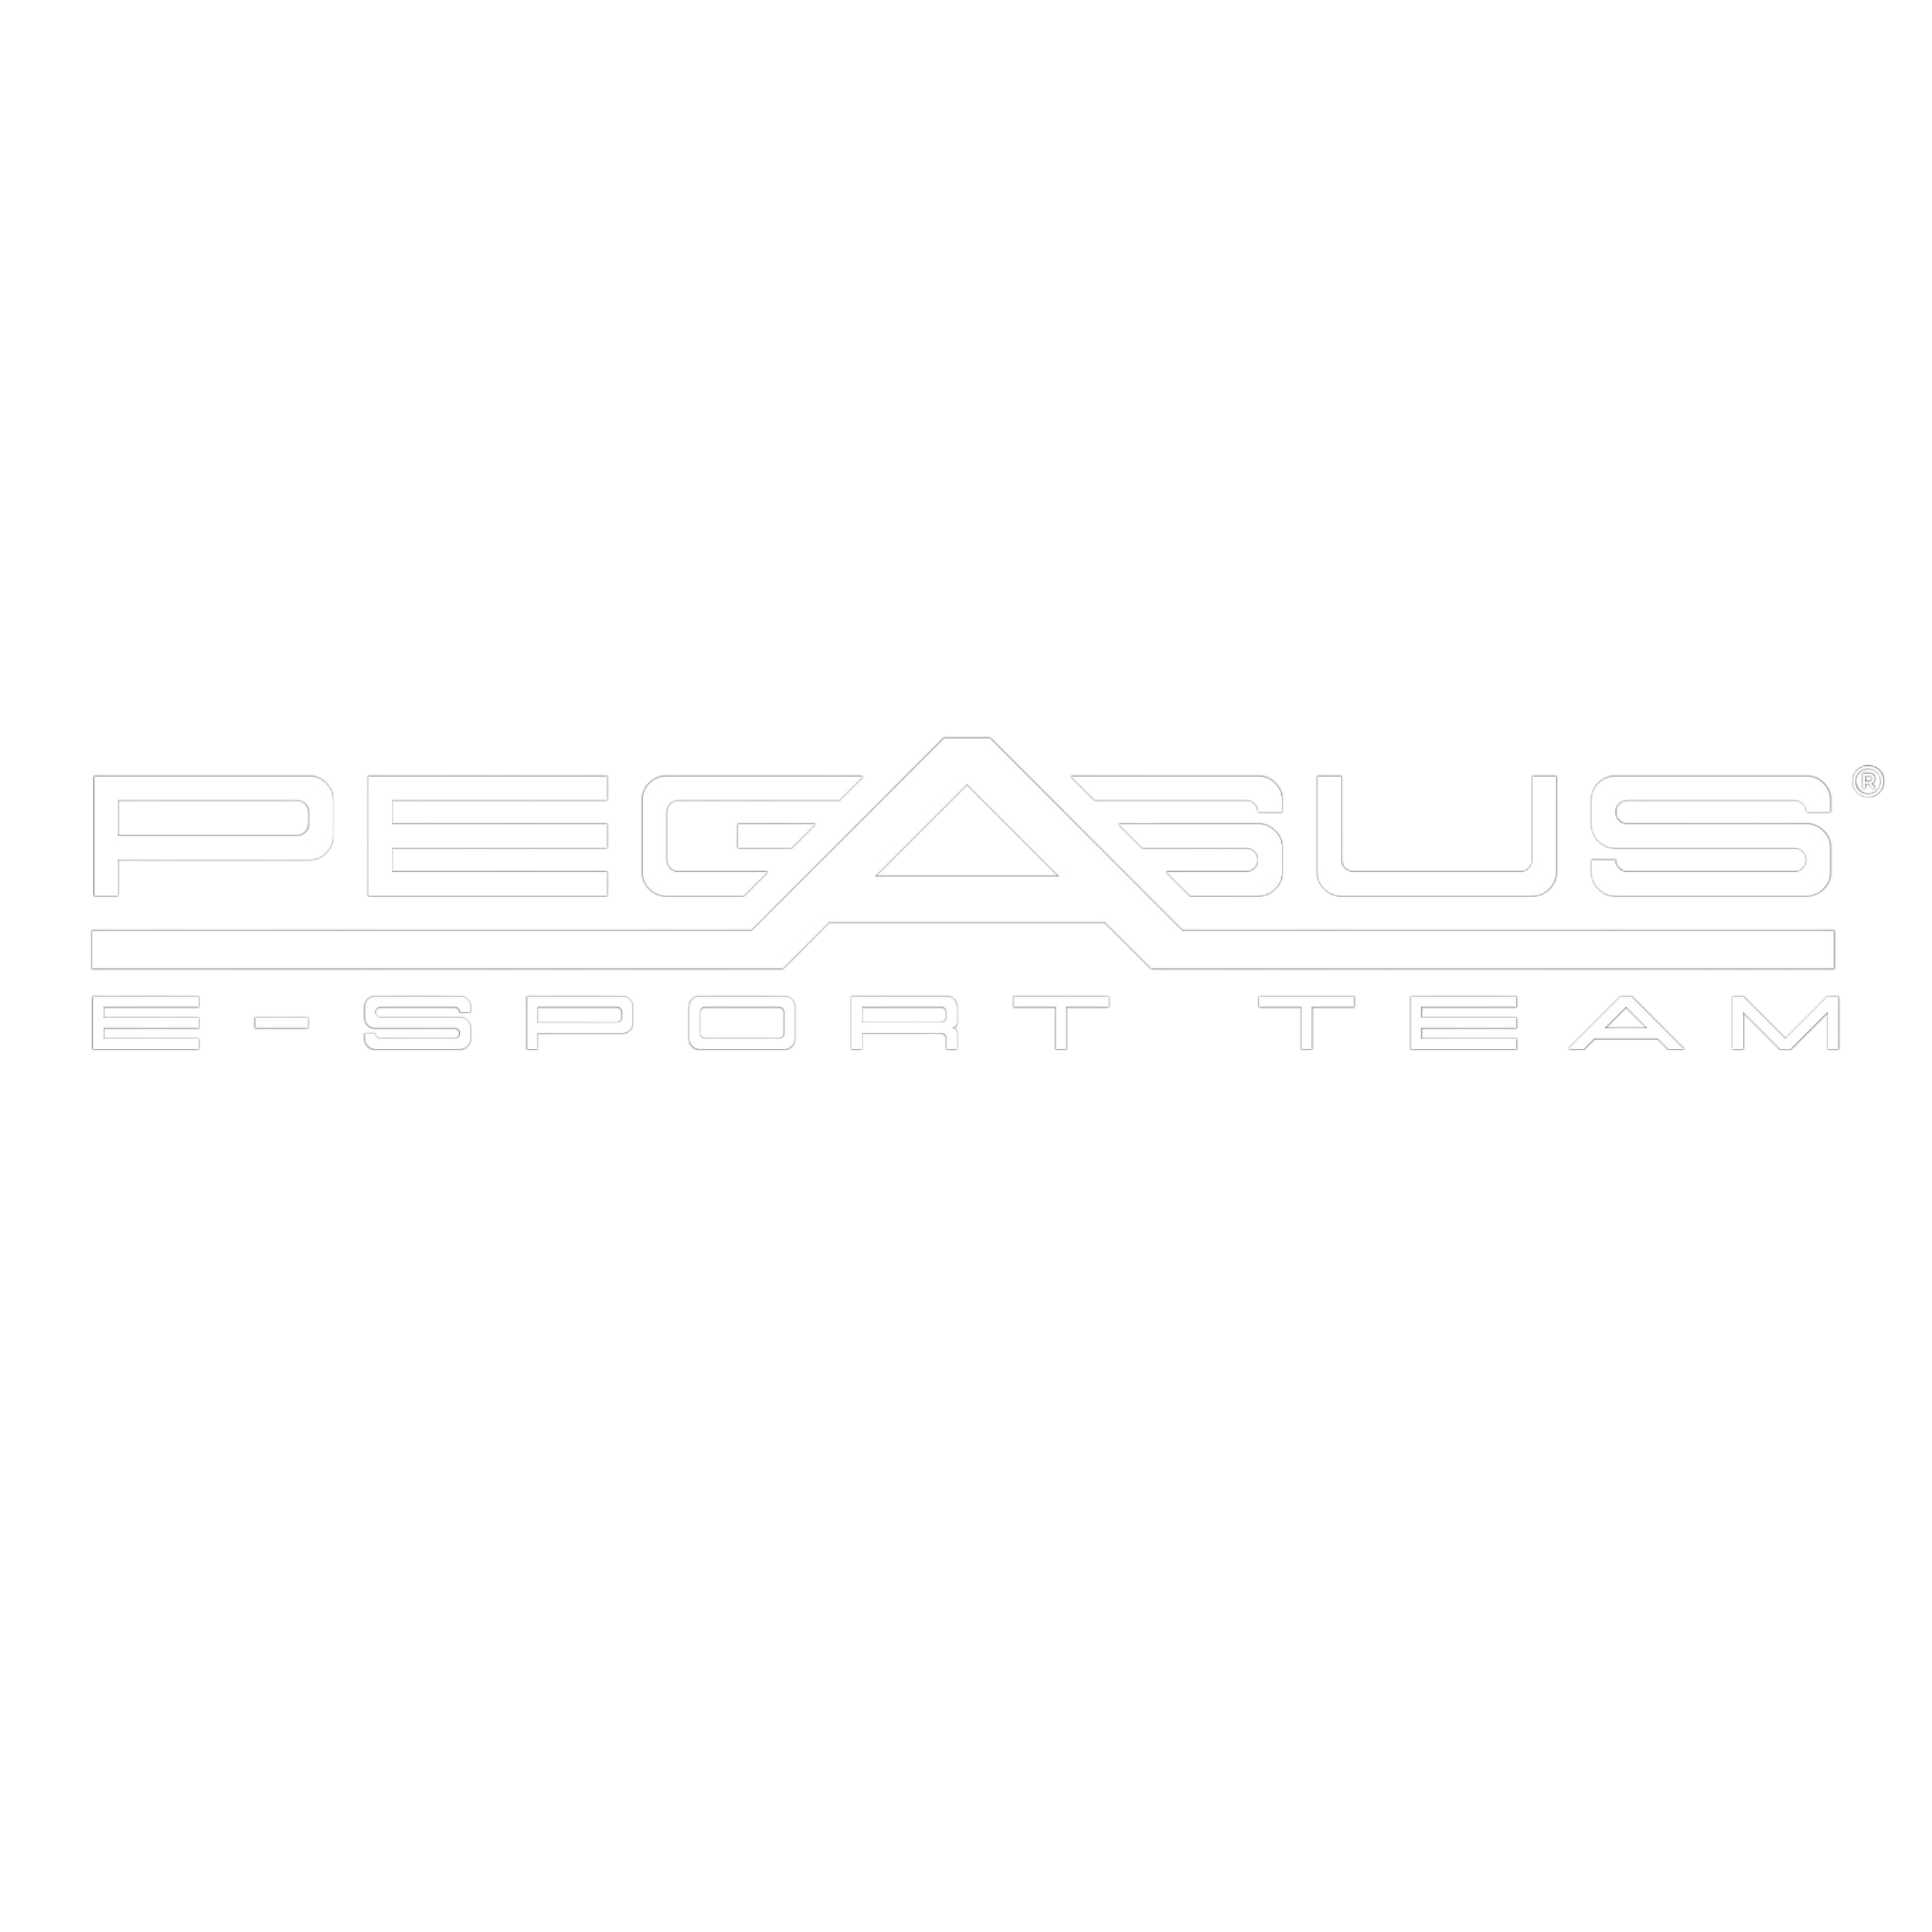 Pegasus E-Sport Team